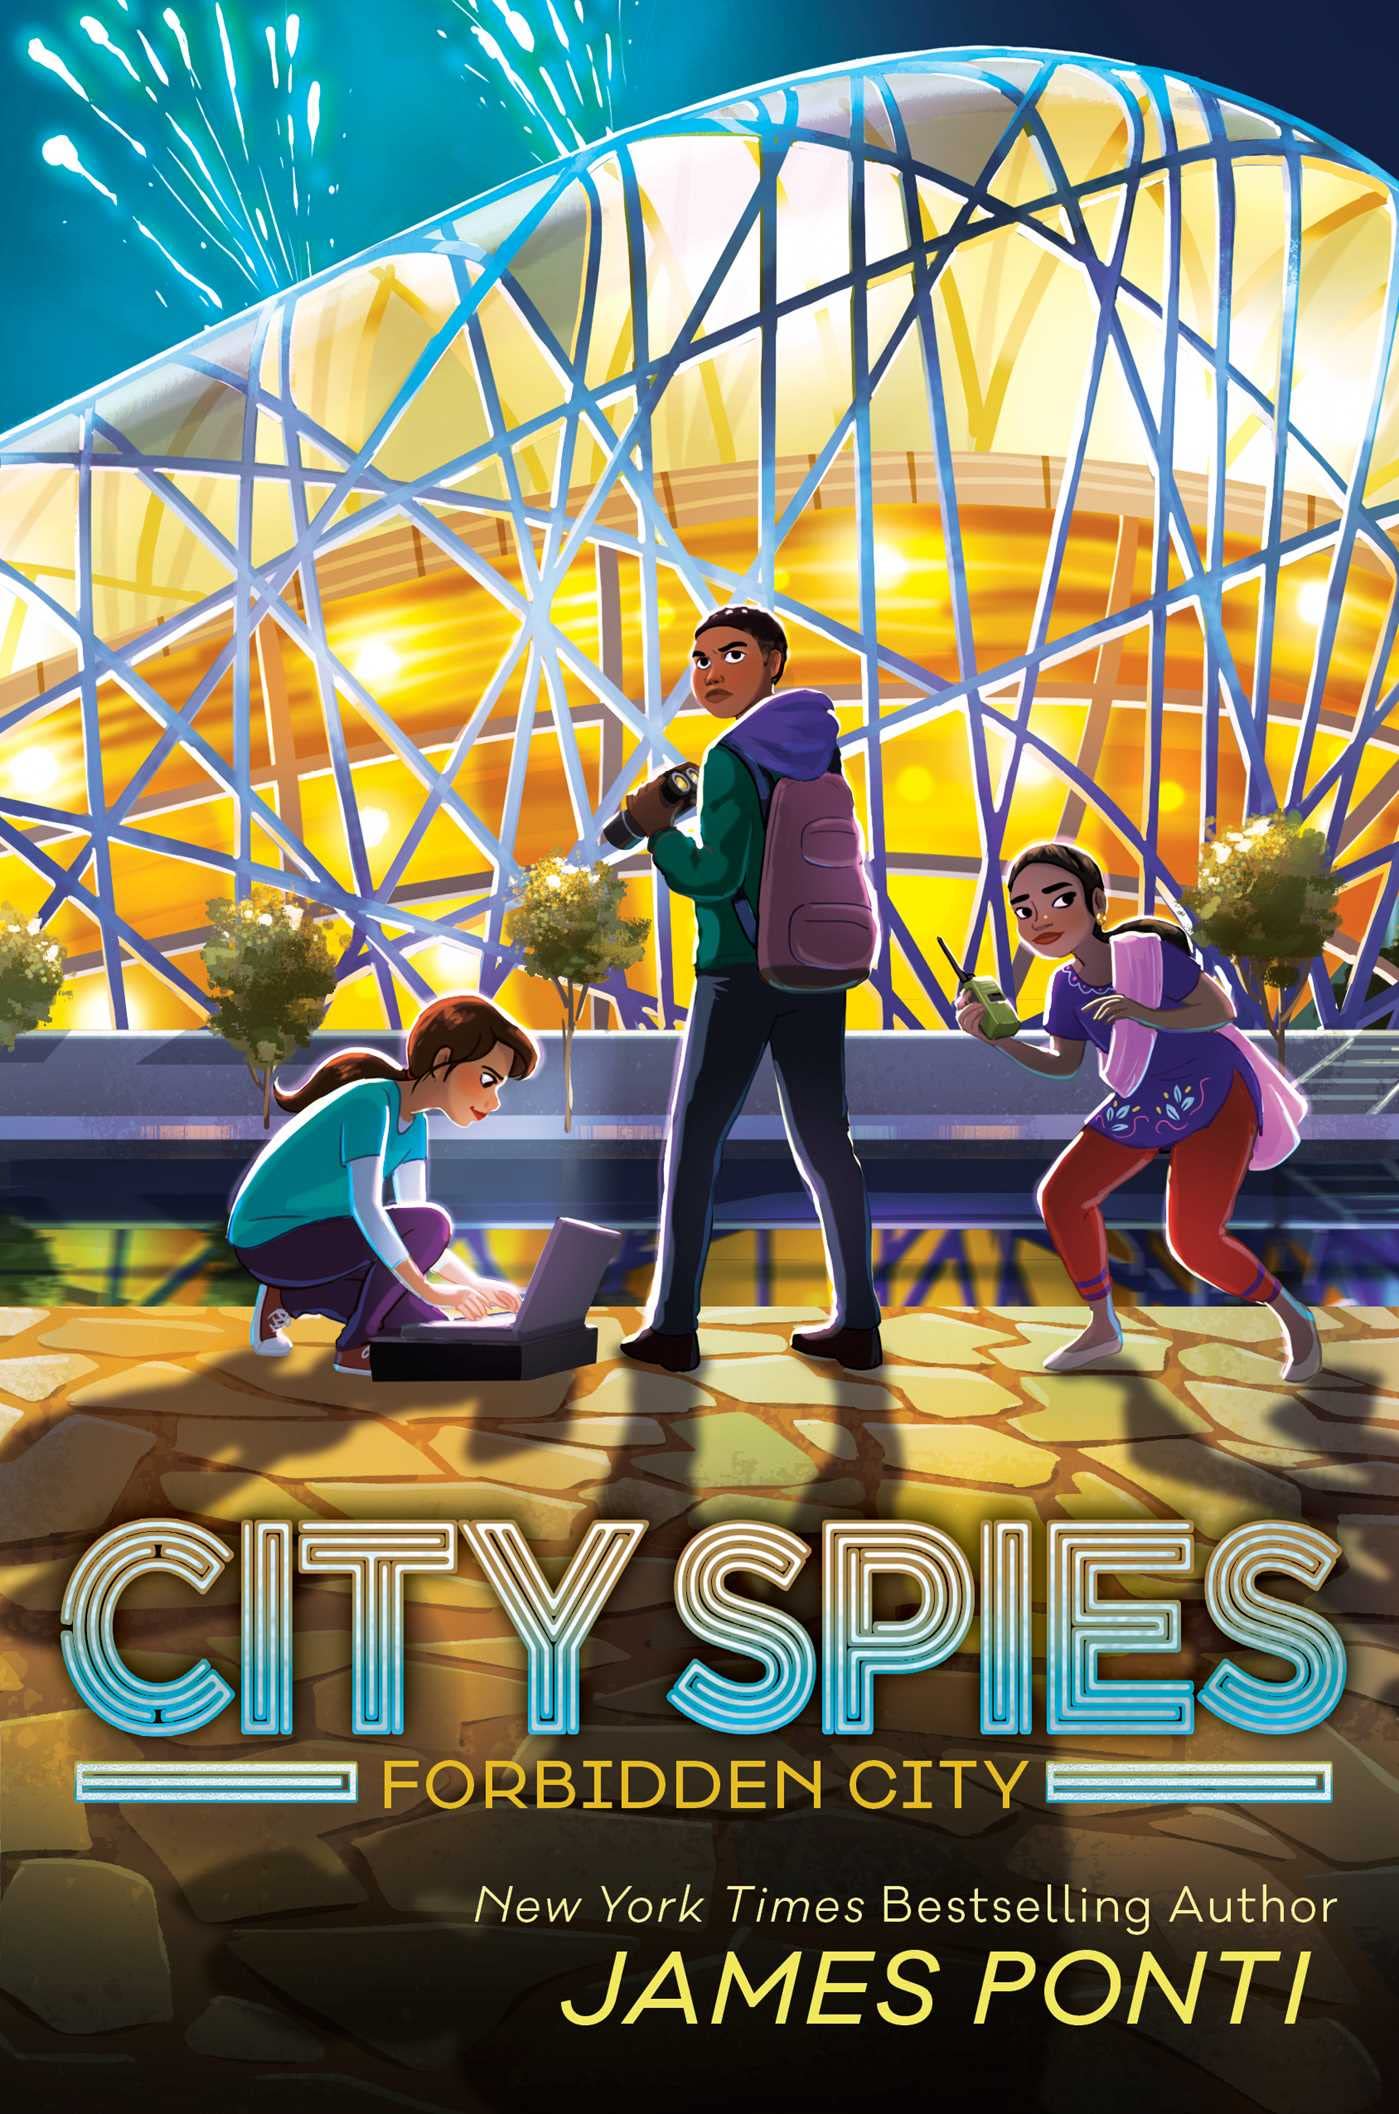 city spies